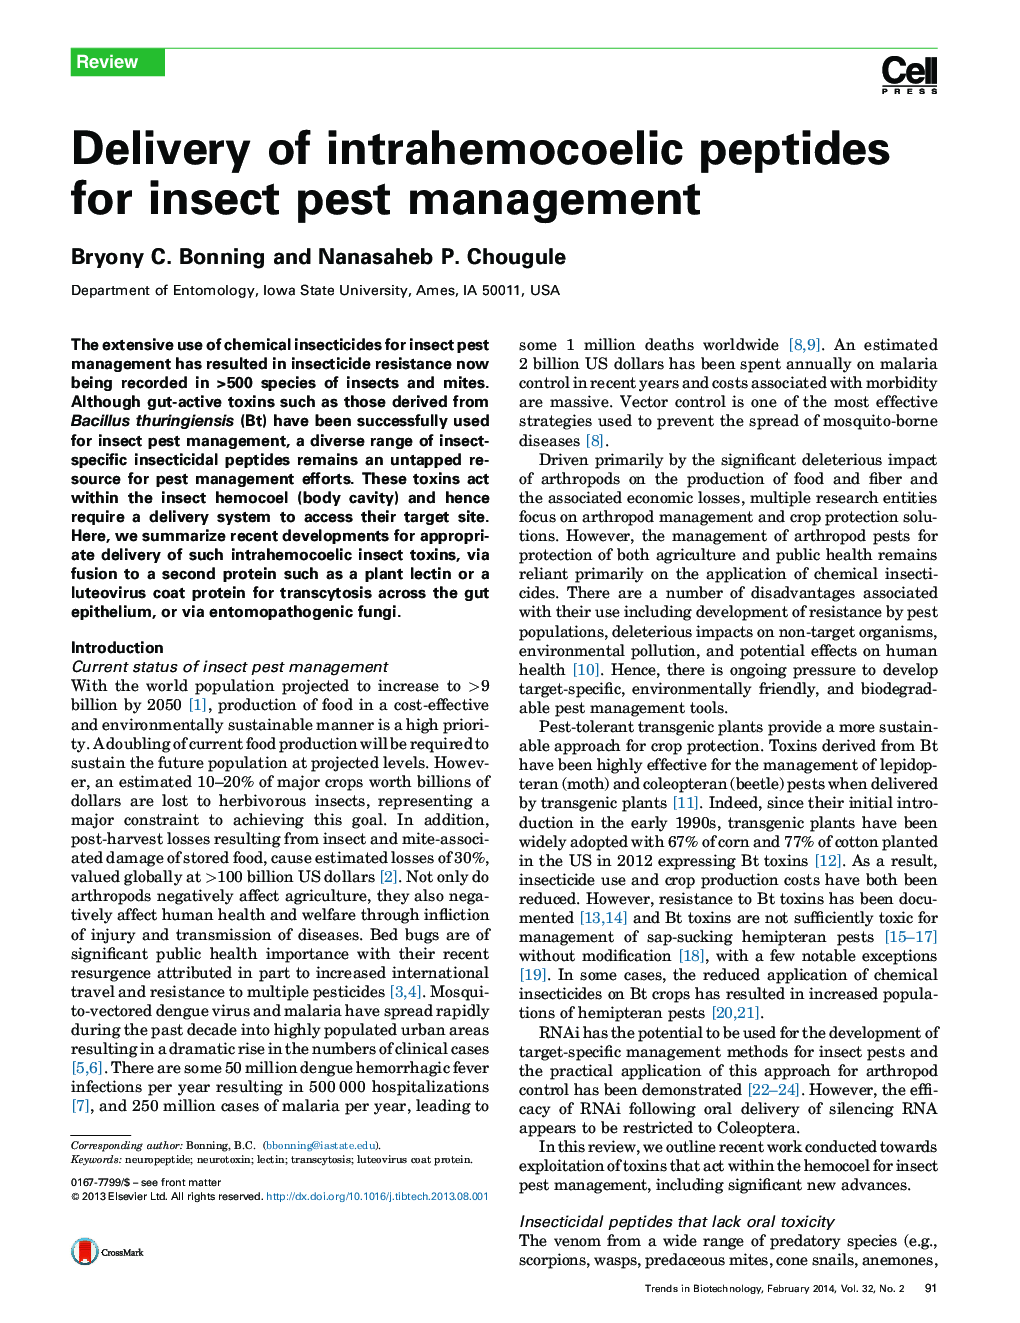 تحویل پپتیدهای داخل مغزی برای مدیریت آفات حشرات 